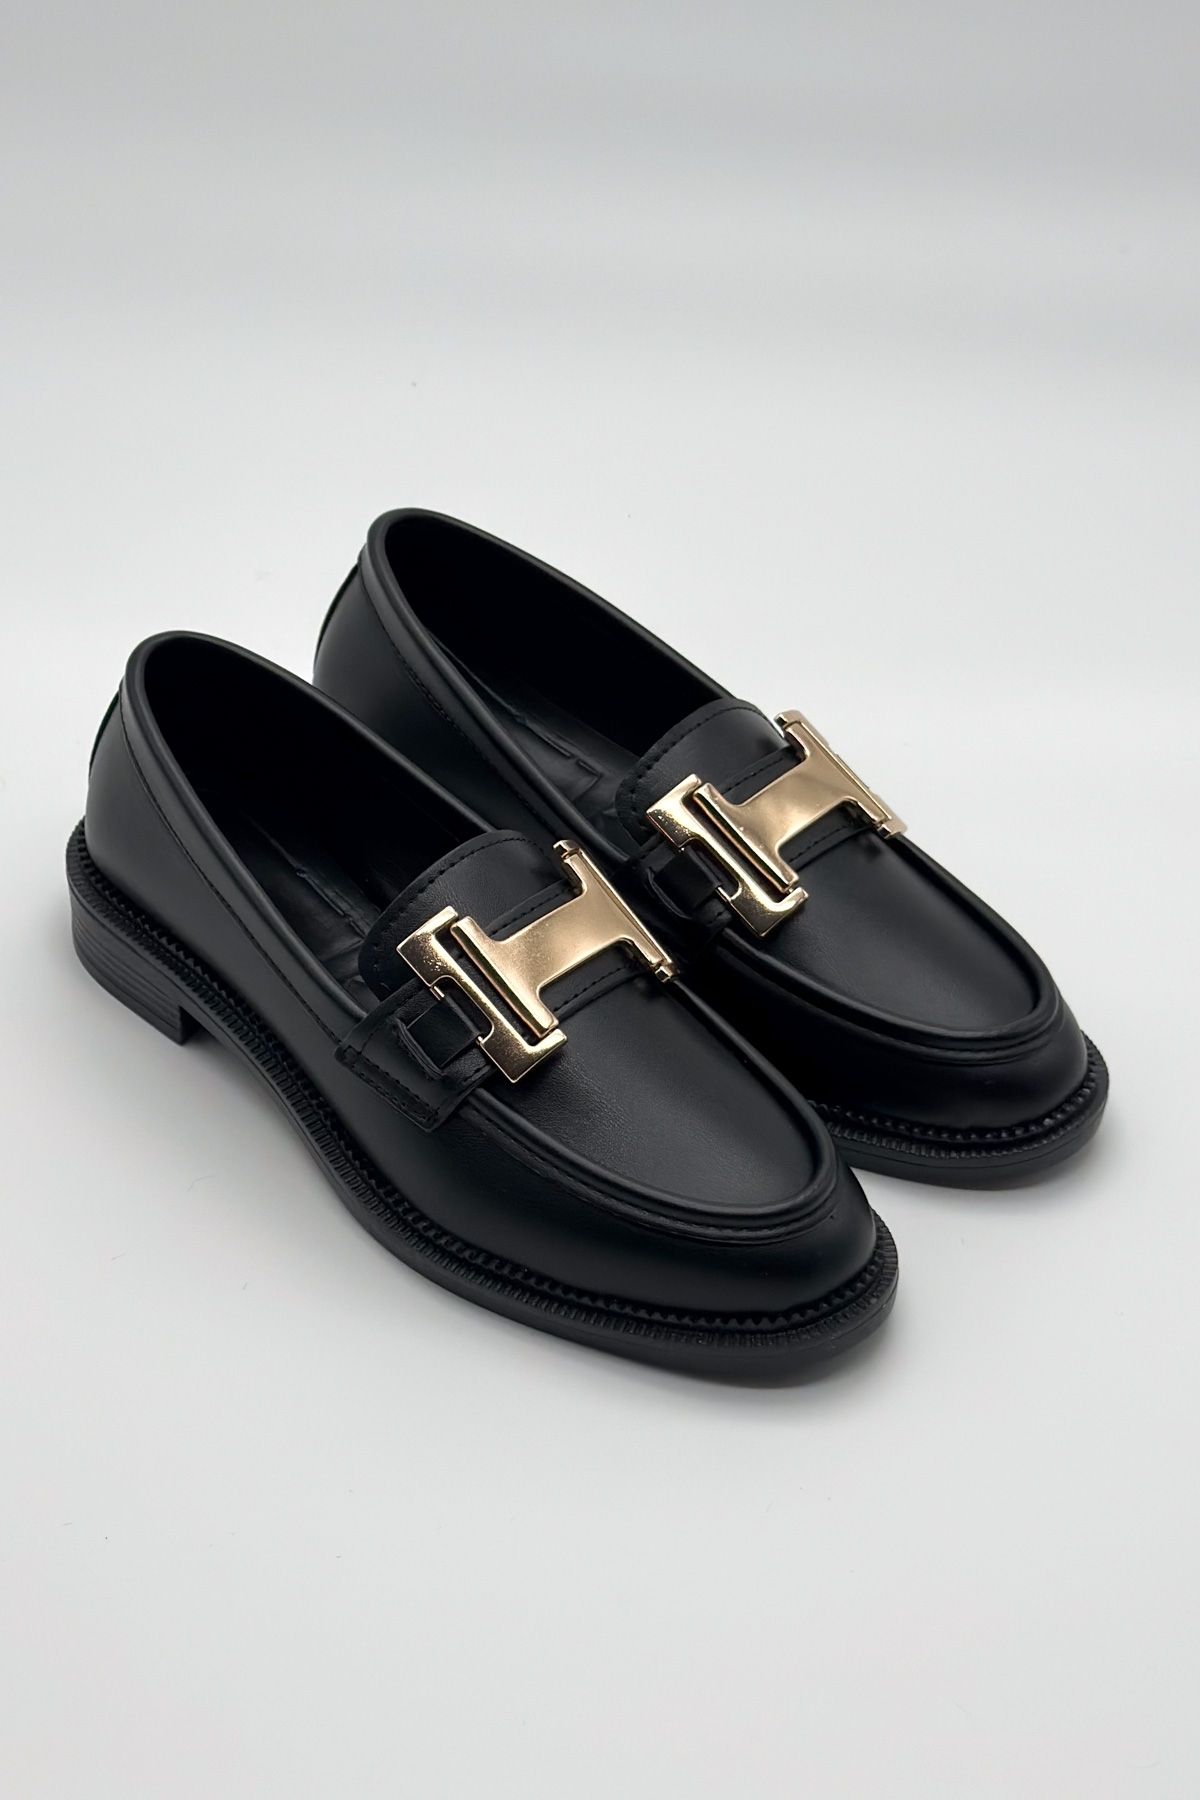 Shoebutik Siyah Deri Toka Detay Kadın Ayakkabı